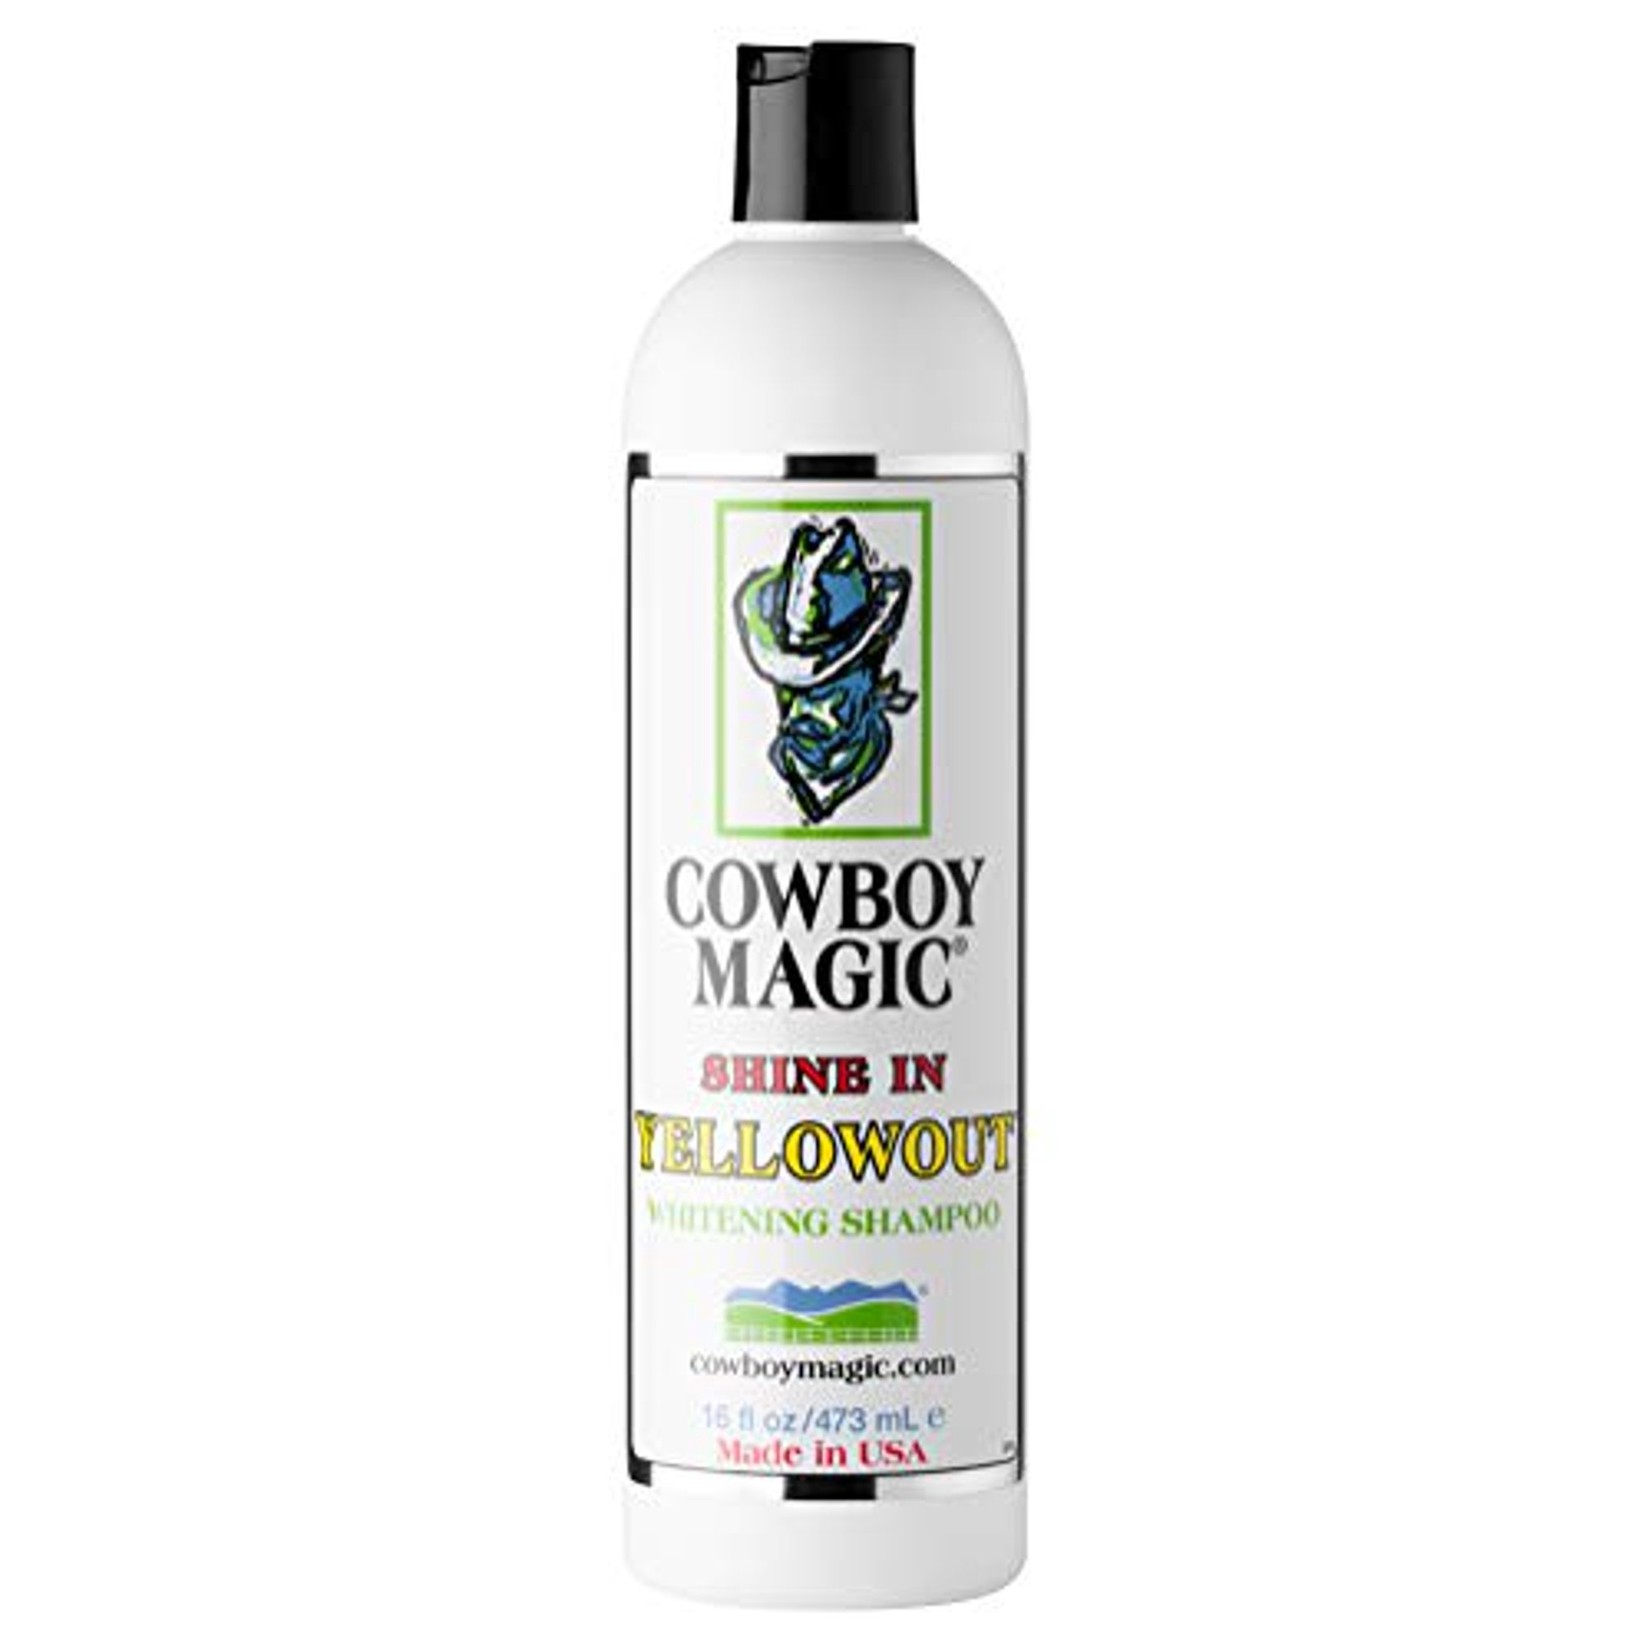 Cowboy Magic Cowboy Magic shine in YELLOWOUT 473 ml